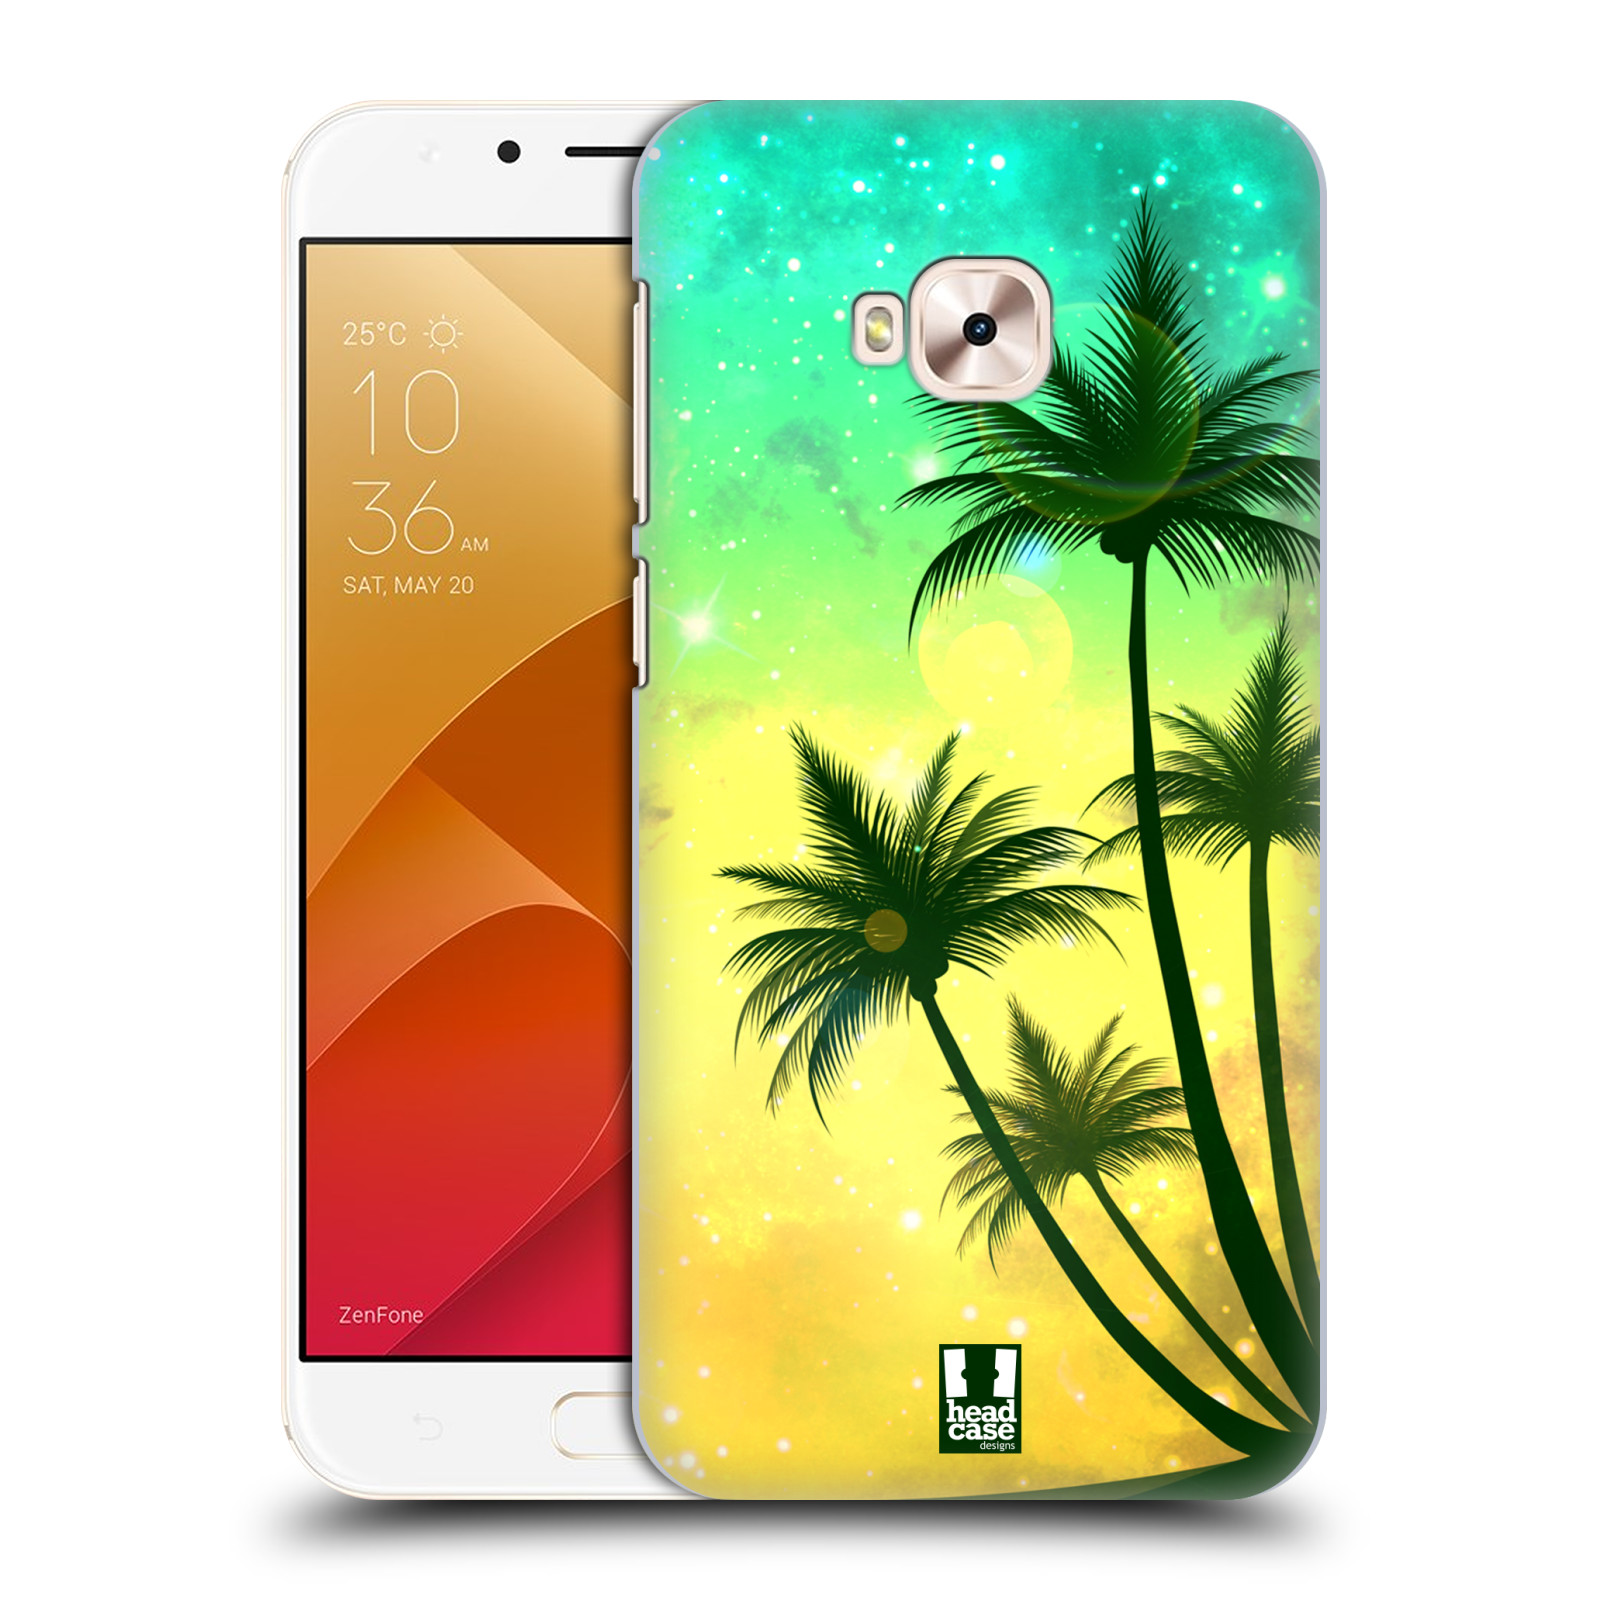 HEAD CASE plastový obal na mobil Asus Zenfone 4 Selfie Pro ZD552KL vzor Kreslený motiv silueta moře a palmy TYRKYSOVÁ